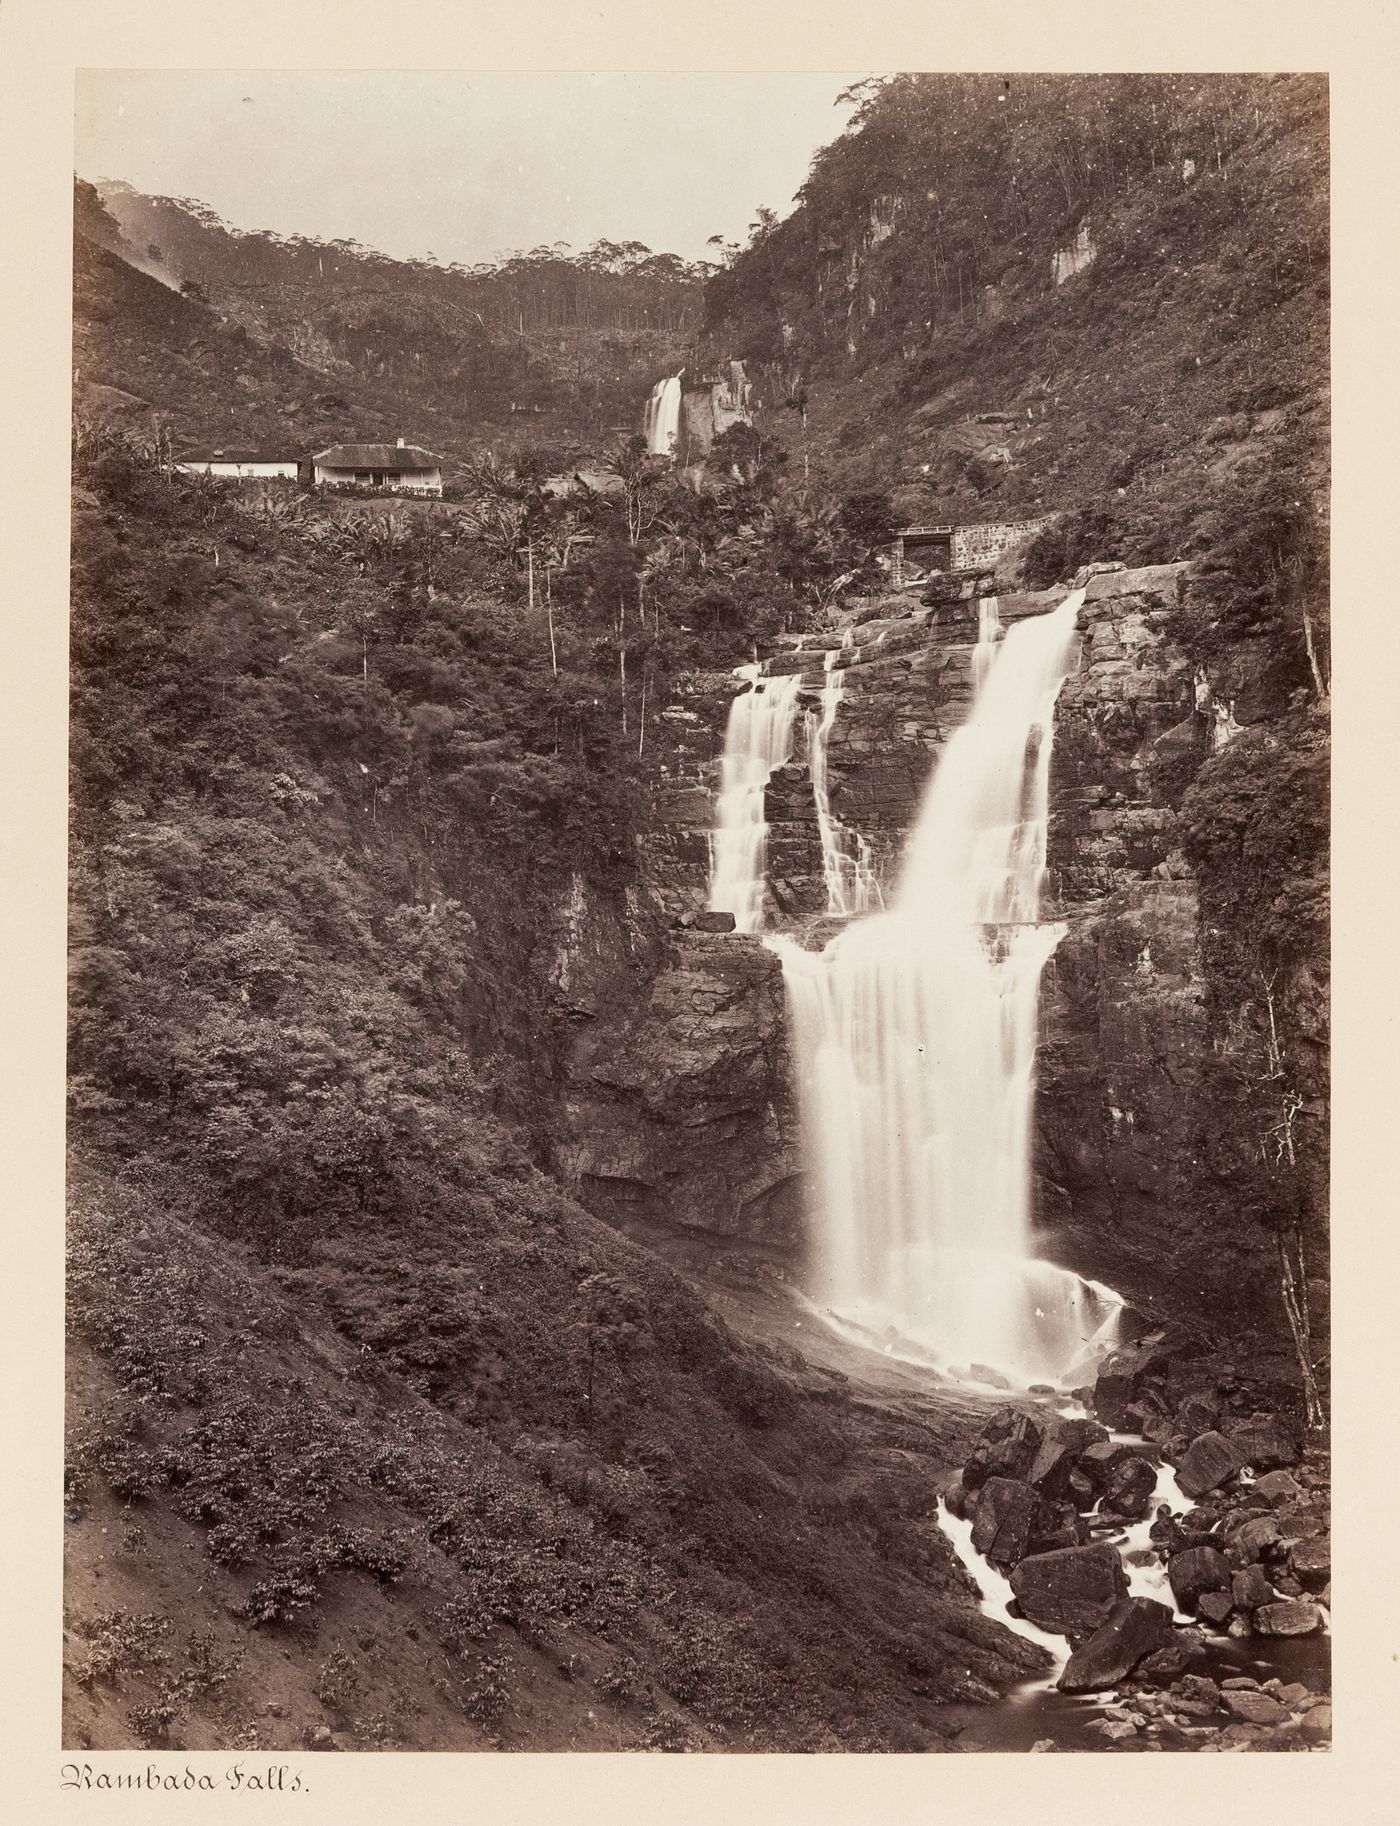 View of the Ramboda Ella Falls, Ramboda, Ceylon (now Sri Lanka)